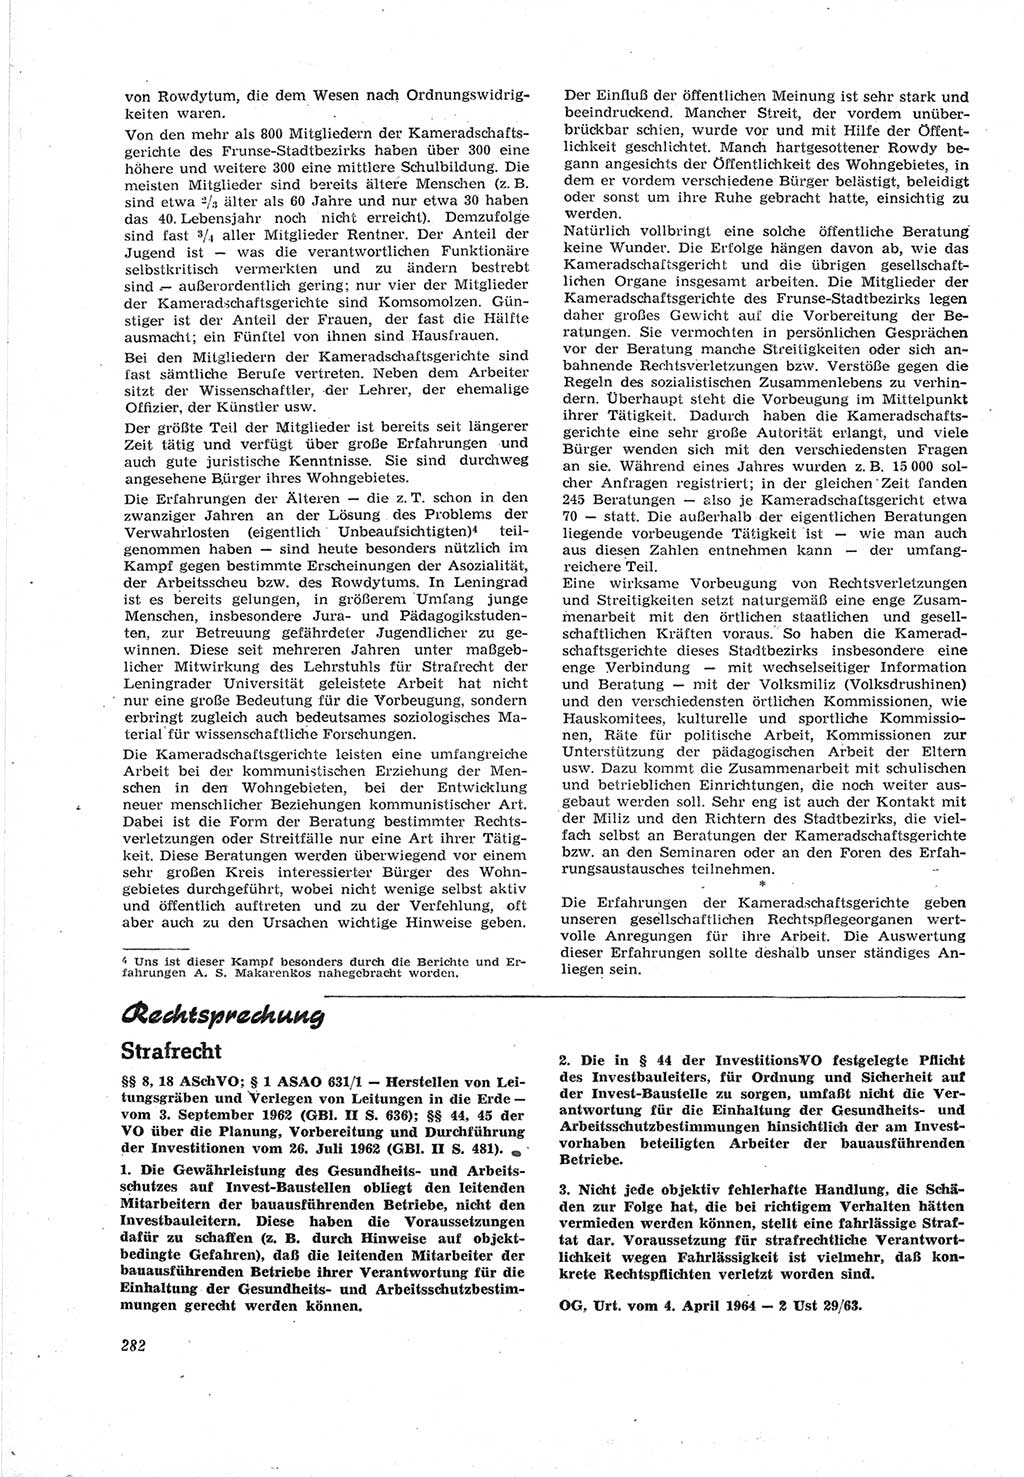 Neue Justiz (NJ), Zeitschrift für Recht und Rechtswissenschaft [Deutsche Demokratische Republik (DDR)], 18. Jahrgang 1964, Seite 282 (NJ DDR 1964, S. 282)